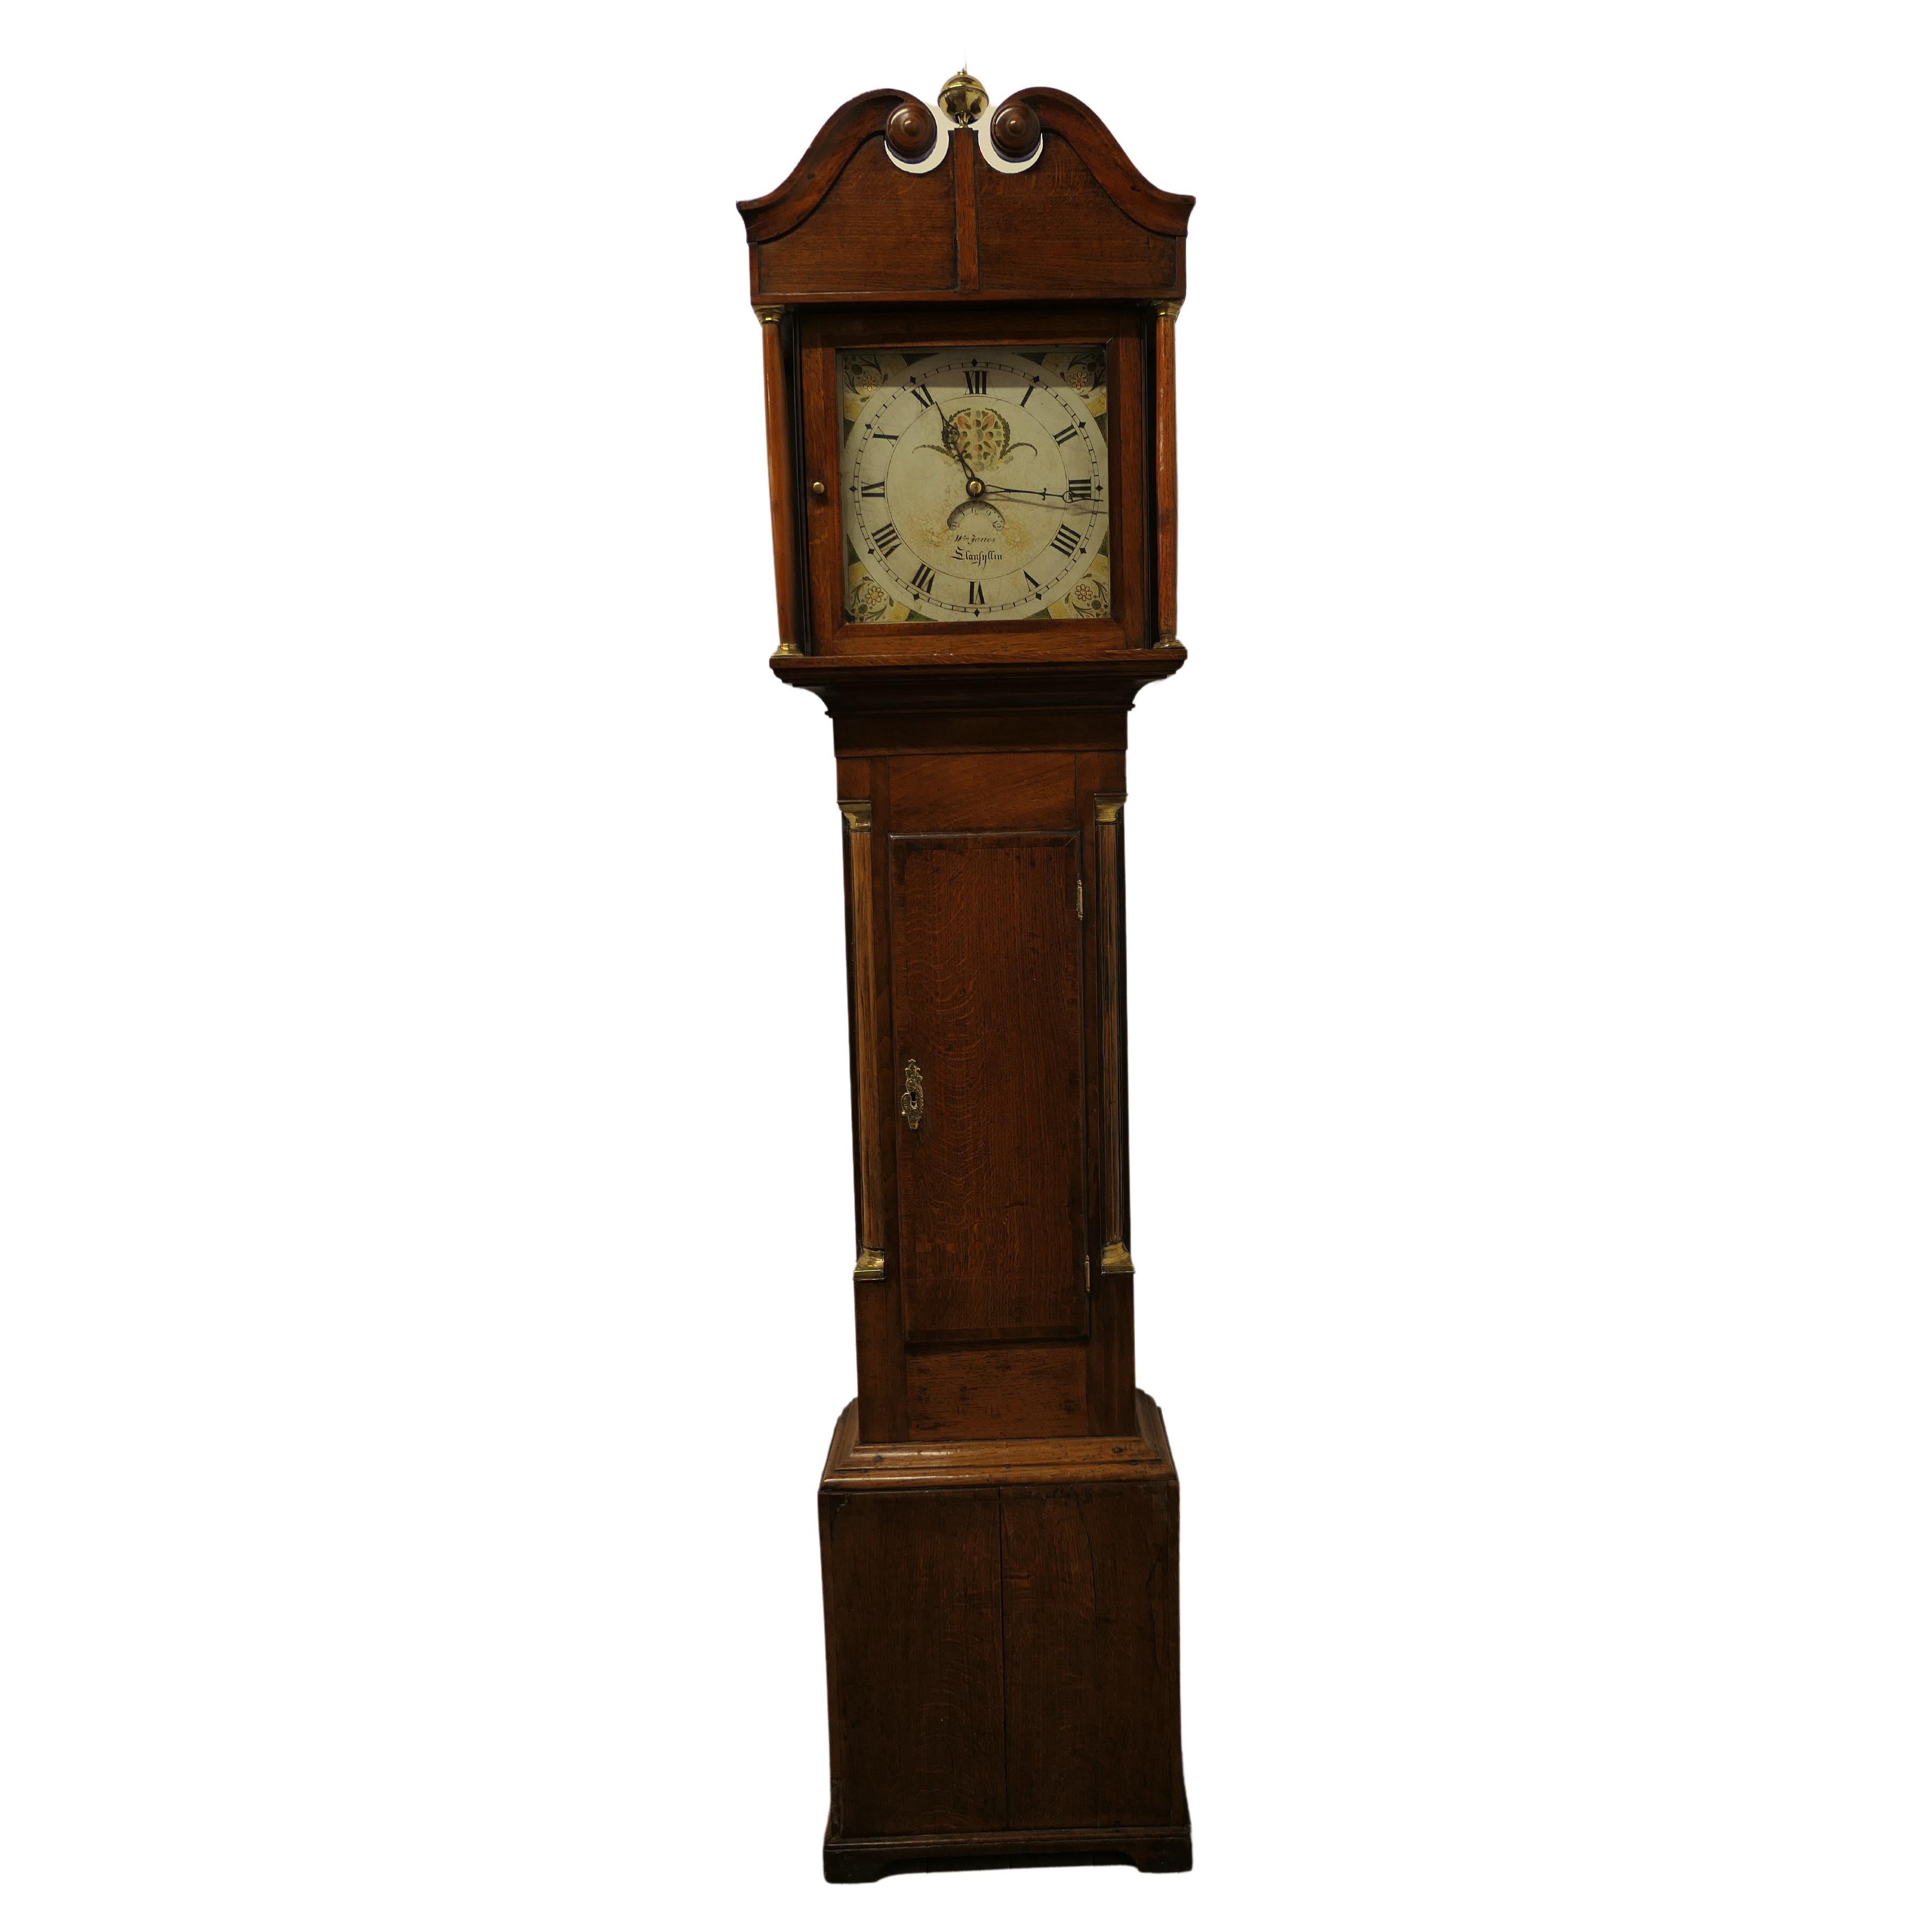  Horloge campagnarde galloise du 19ème siècle en chêne à long boîtier par Wm Jones of Llanfyllin   